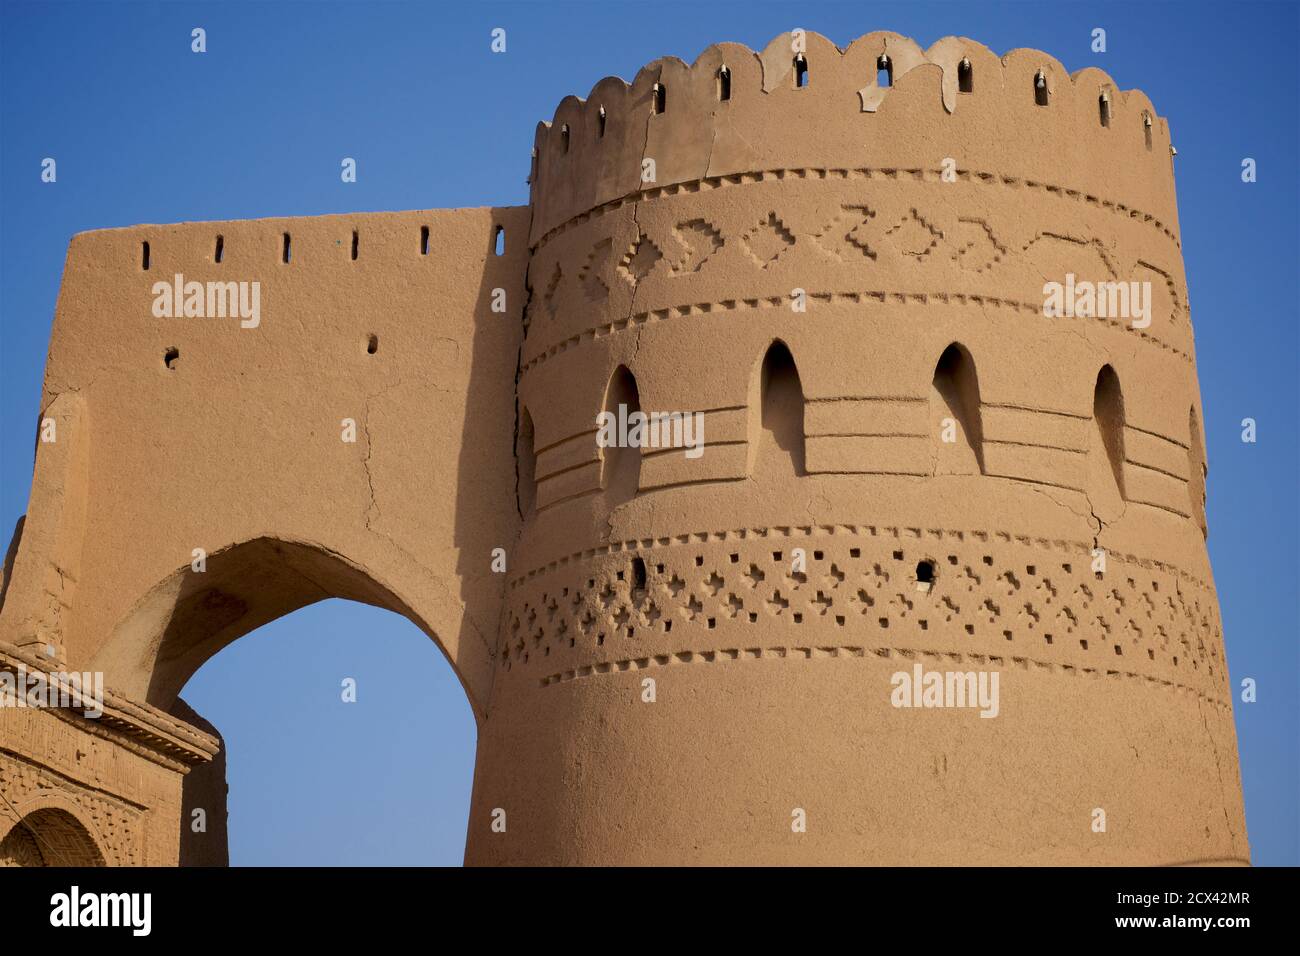 Adobe-Architektur, Yazd, Iran. Kunstvoller Turm in der Altstadt von Yazd, Iran Stockfoto